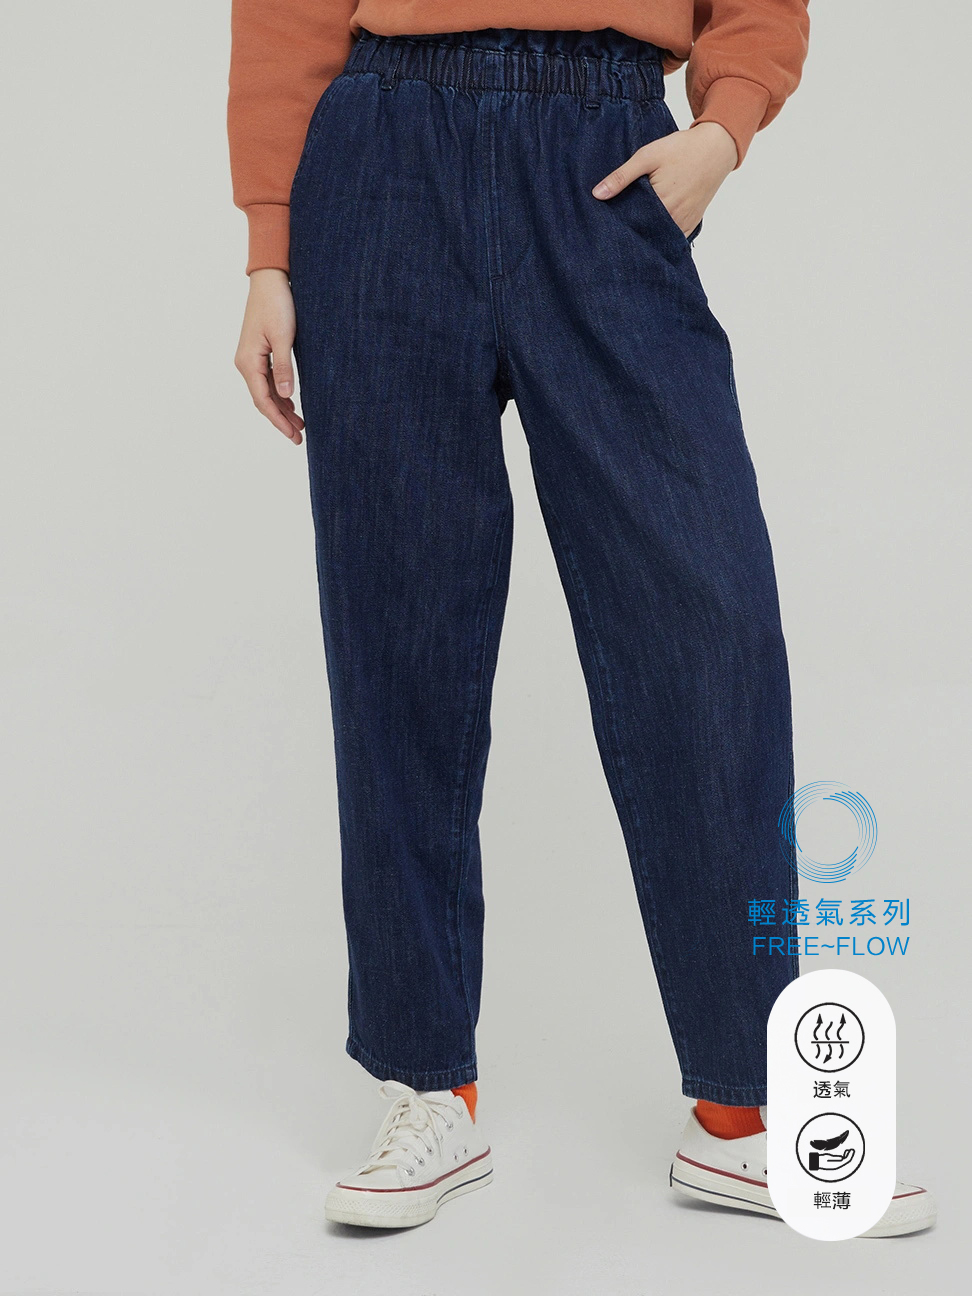 女裝|輕透氣系列 棉麻混紡高腰版型牛仔褲